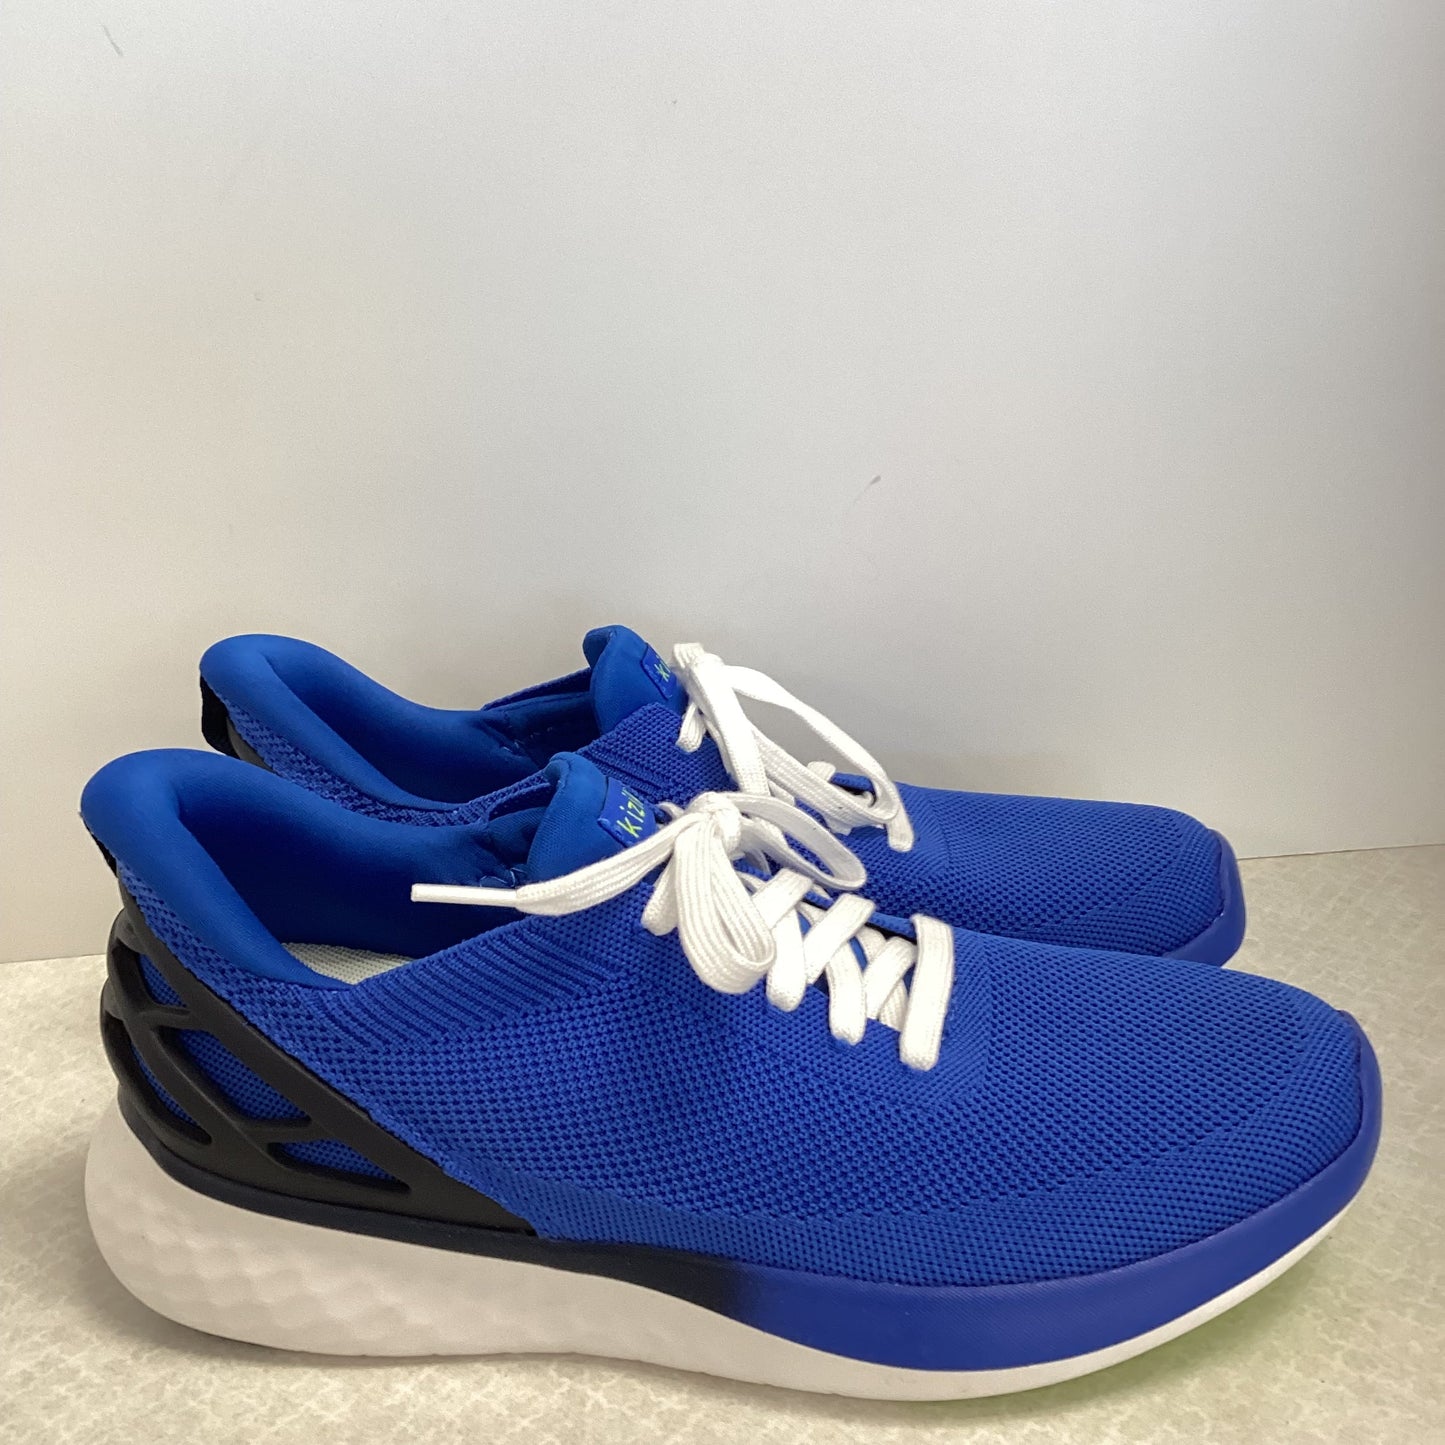 Blue Shoes Athletic Kizik , Size 9.5